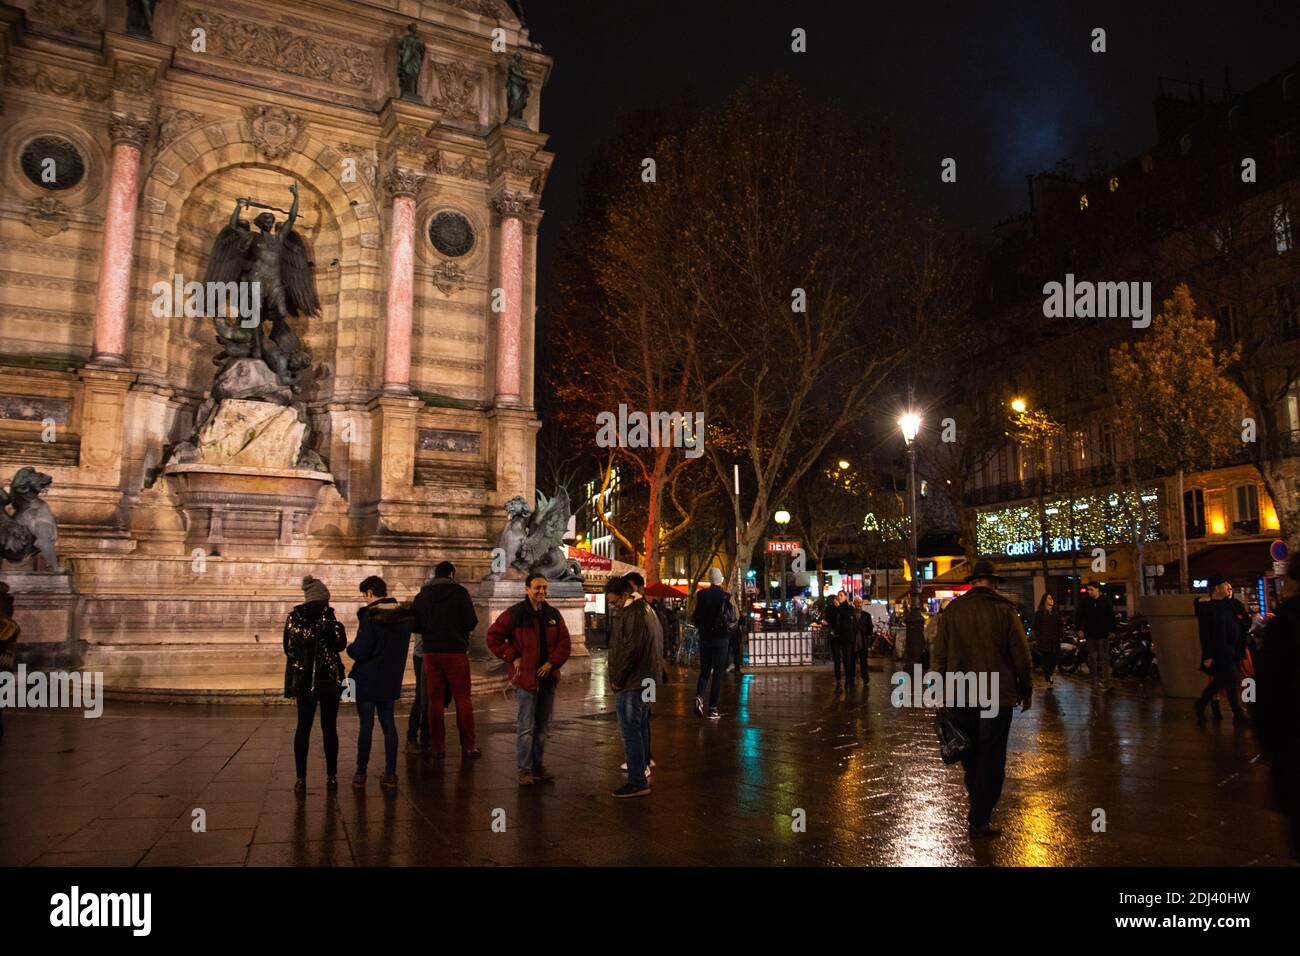 PARIS, FRANCE - 2 DÉCEMBRE 2018 : Tourisme et rencontres locales sur la place Saint Michel le soir. Réflexion colorée des lumières sur l'eau (après la pluie) Banque D'Images